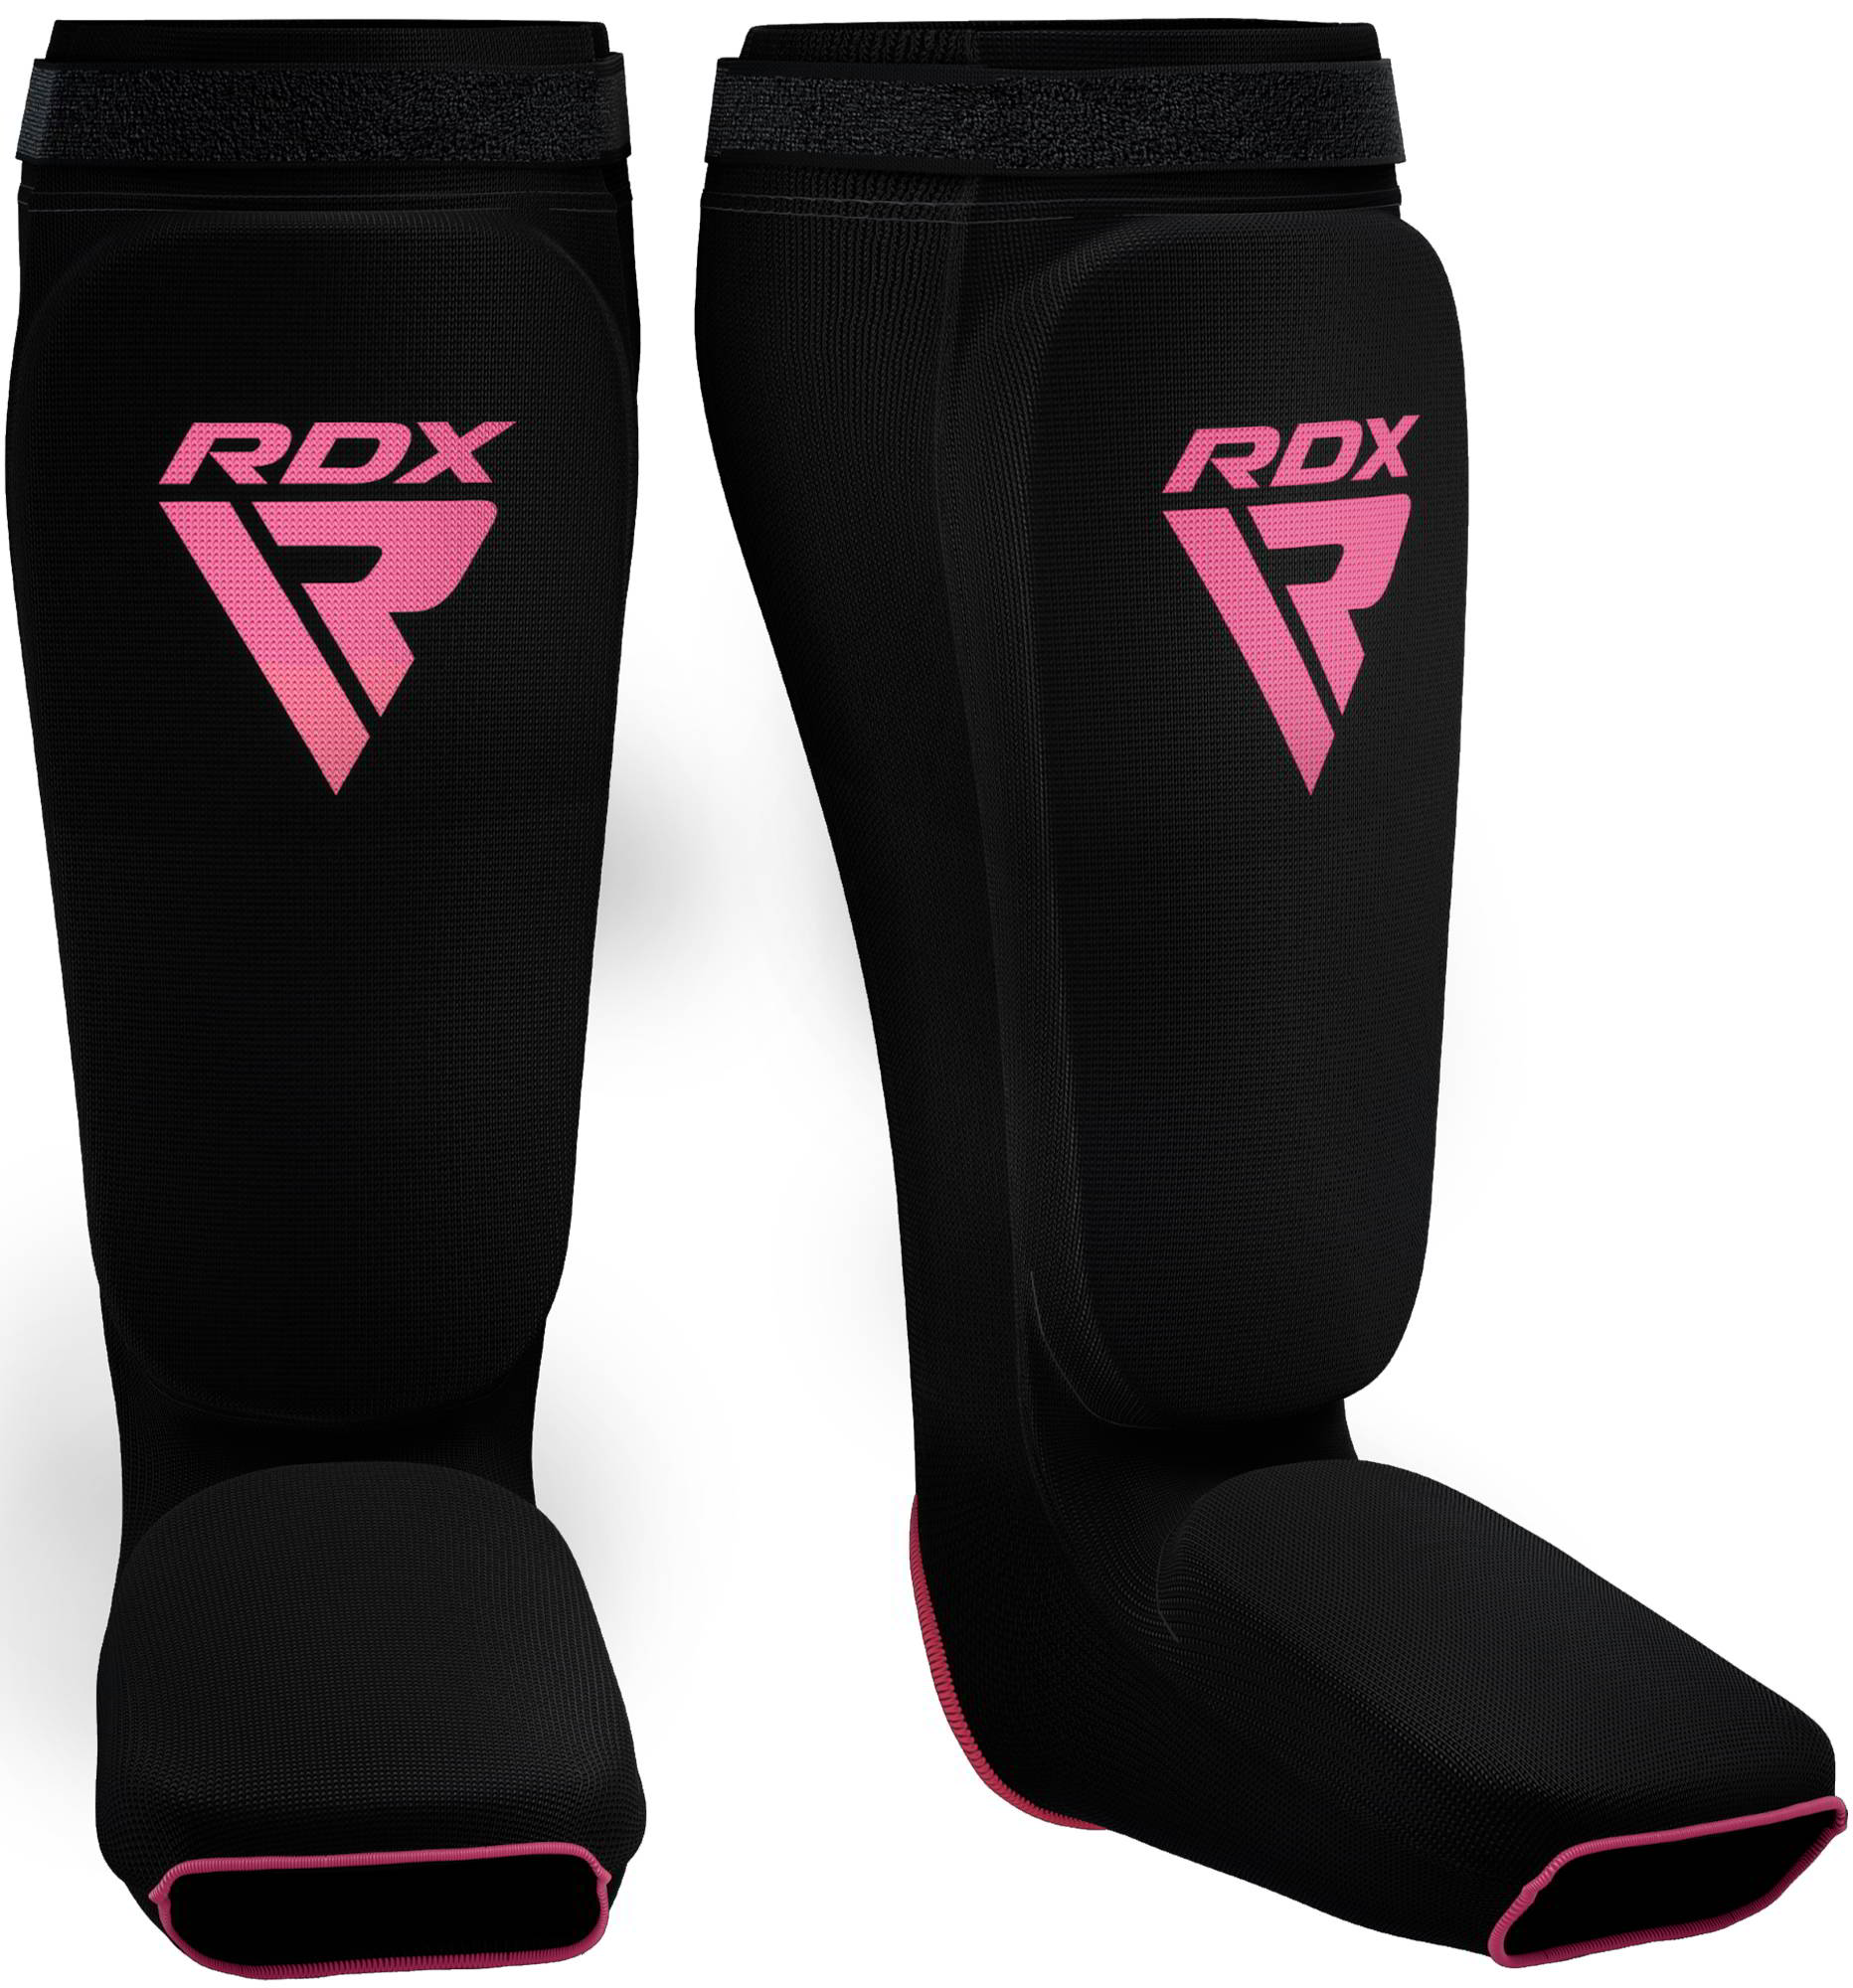 RDX SIB Shin Instep Guard OEKO-TEX® Standard 100 Certified Pink L